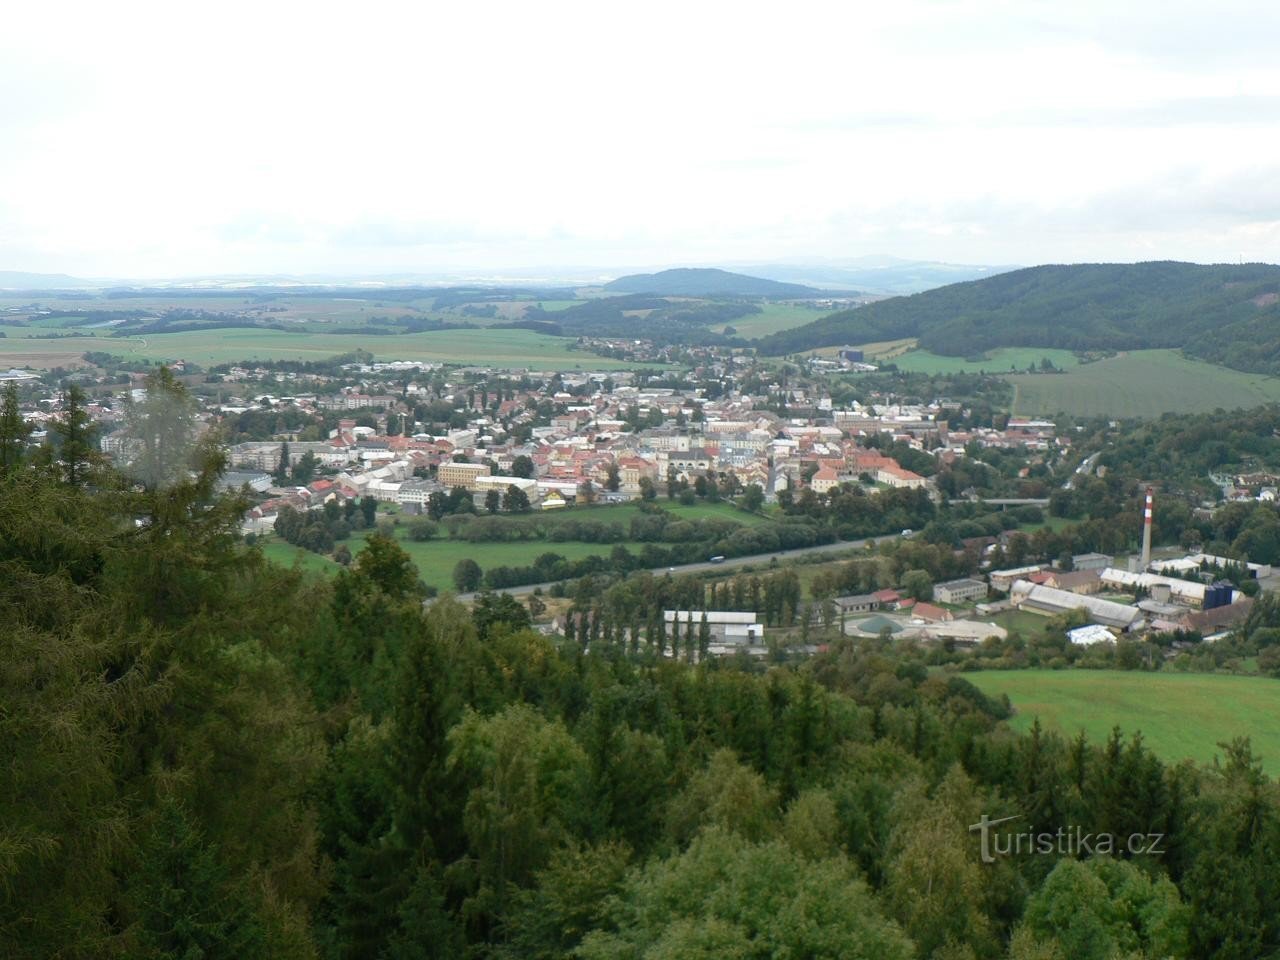 Kilátás a városra Pastýřka felől